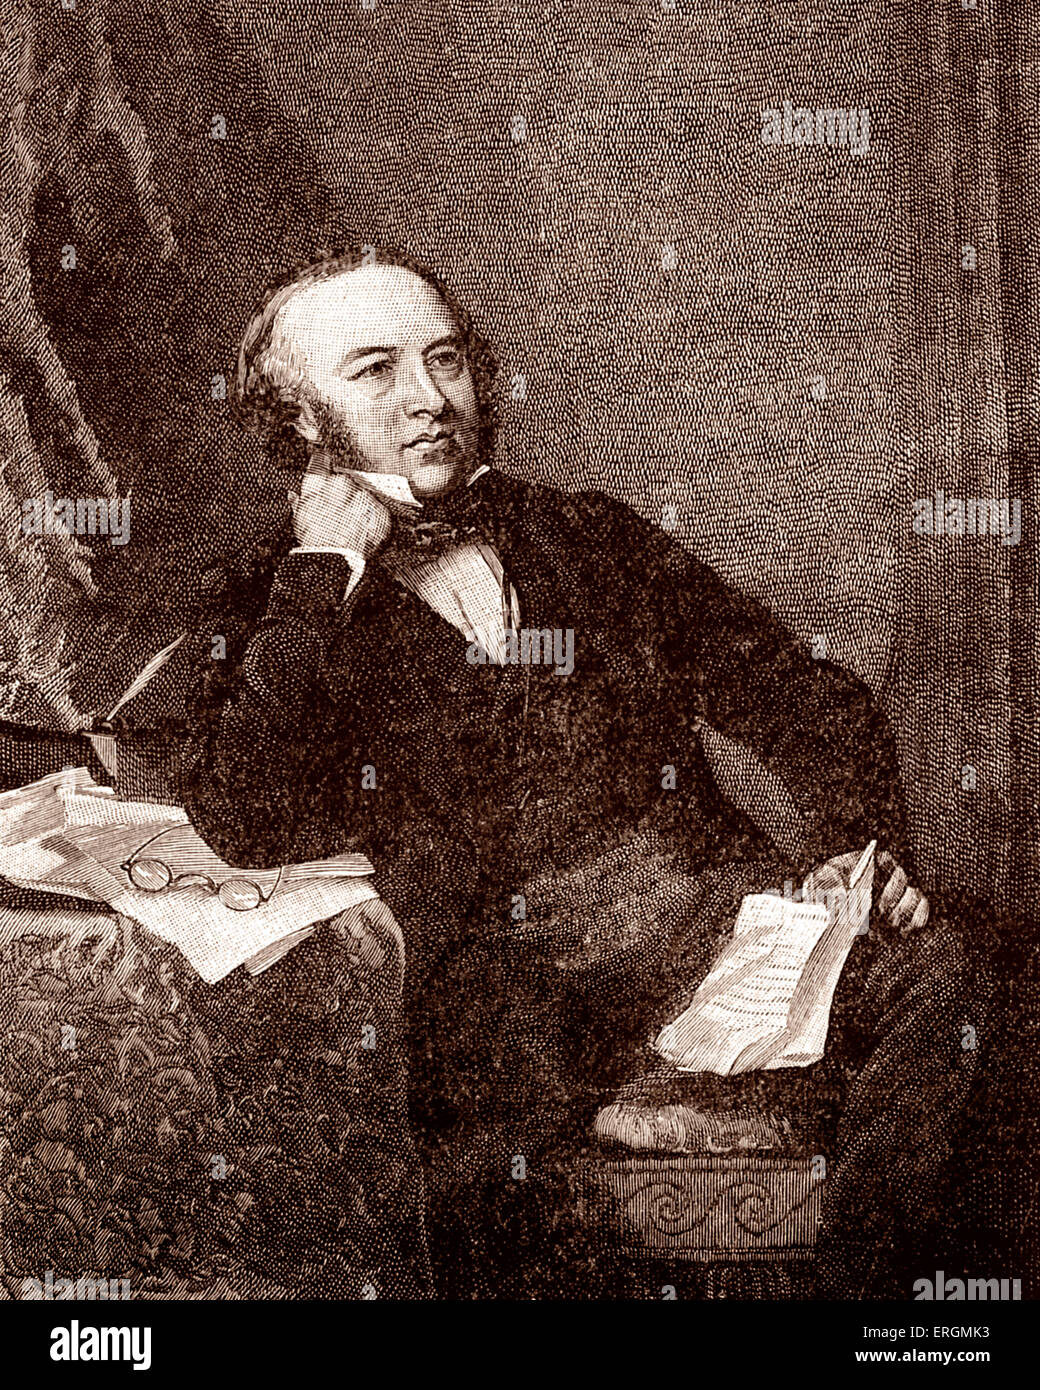 Sir Rowland Hill in 1847 Porträt. Englisch-Lehrer, Erfinder und Sozialreformer. Kämpferin für Postwesen reformieren Stockfoto